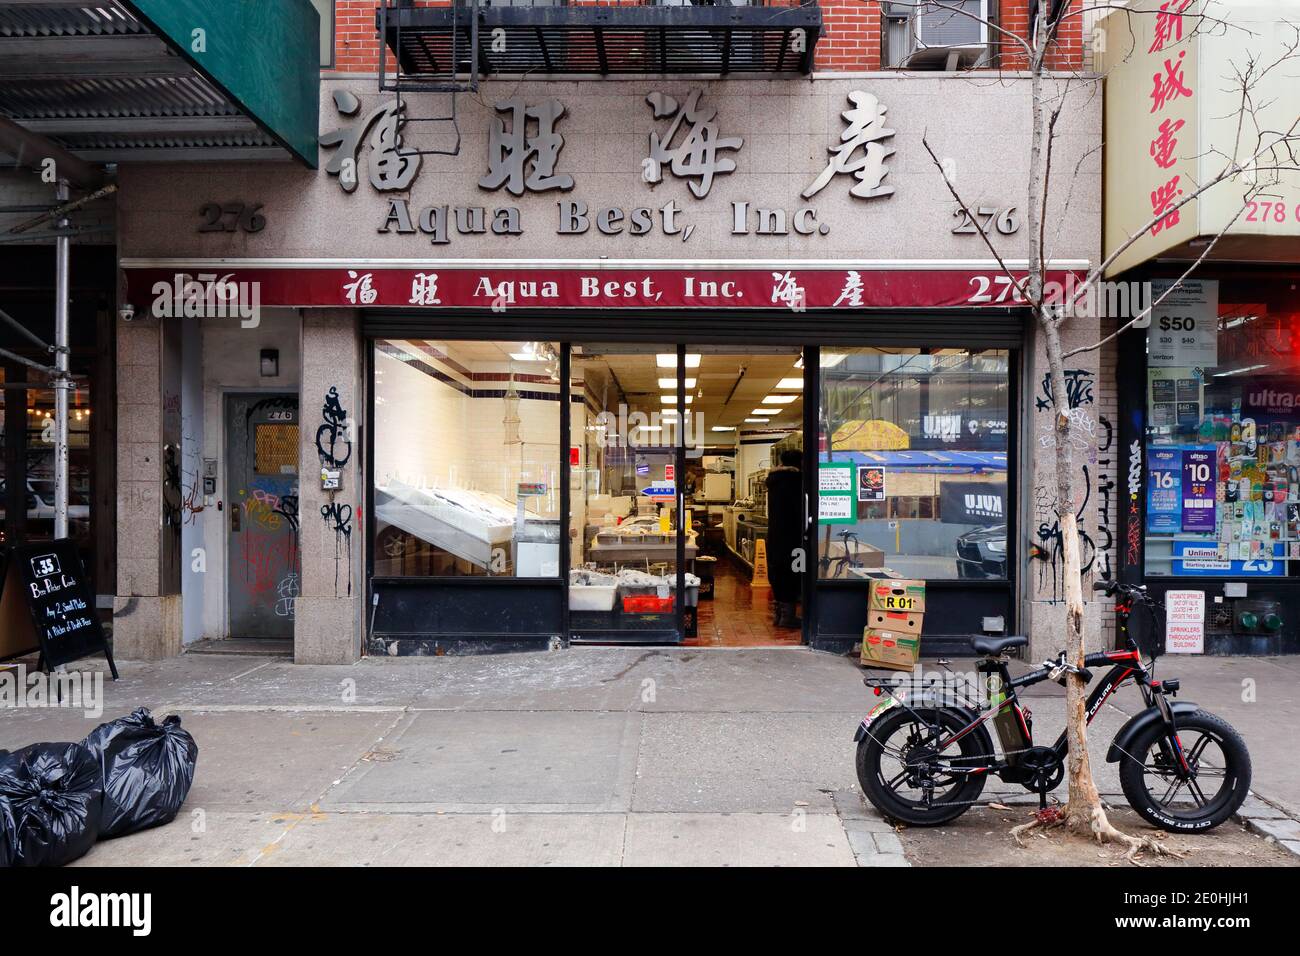 Aqua Best 福旺海產, 276 Grand St, Nueva York, Nueva York, Nueva York, foto del escaparate de un distribuidor de mariscos y un mercado de pescado en el barrio chino de Manhattan. Foto de stock